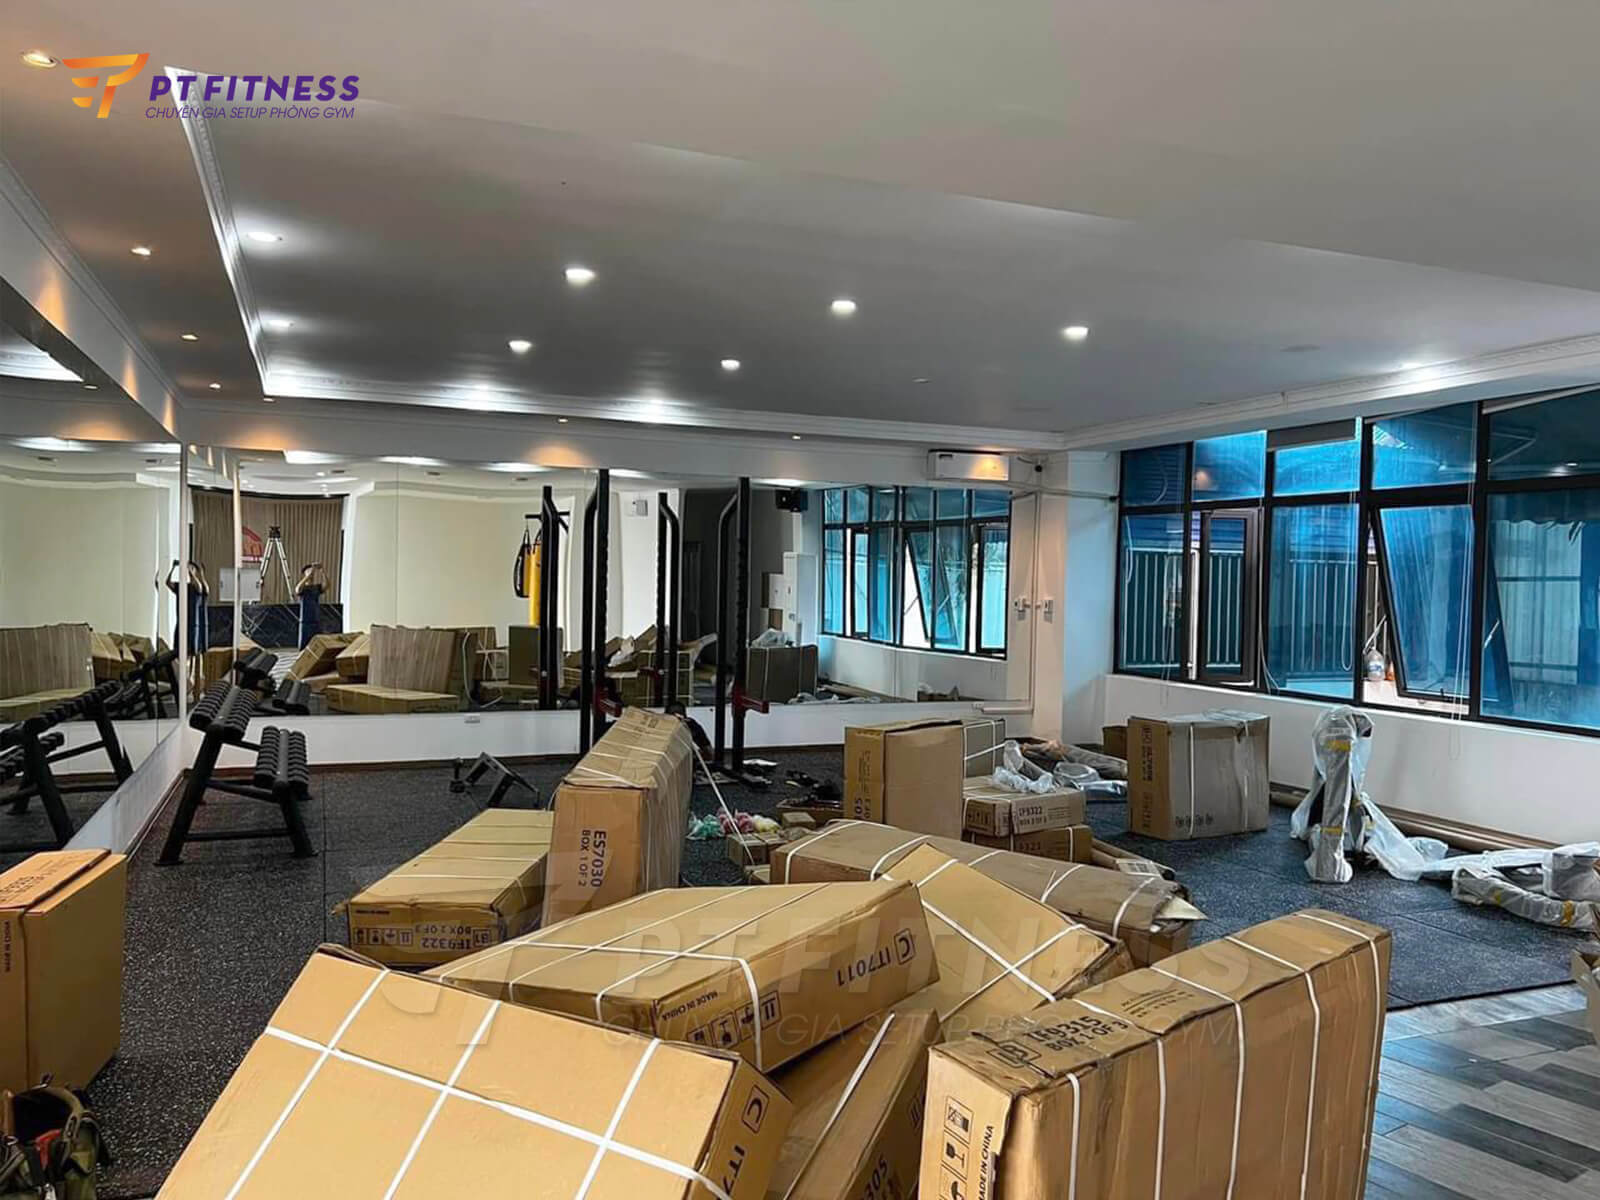 Lắp đặt phòng gym thương mại Fit247 tại Thái Nguyên